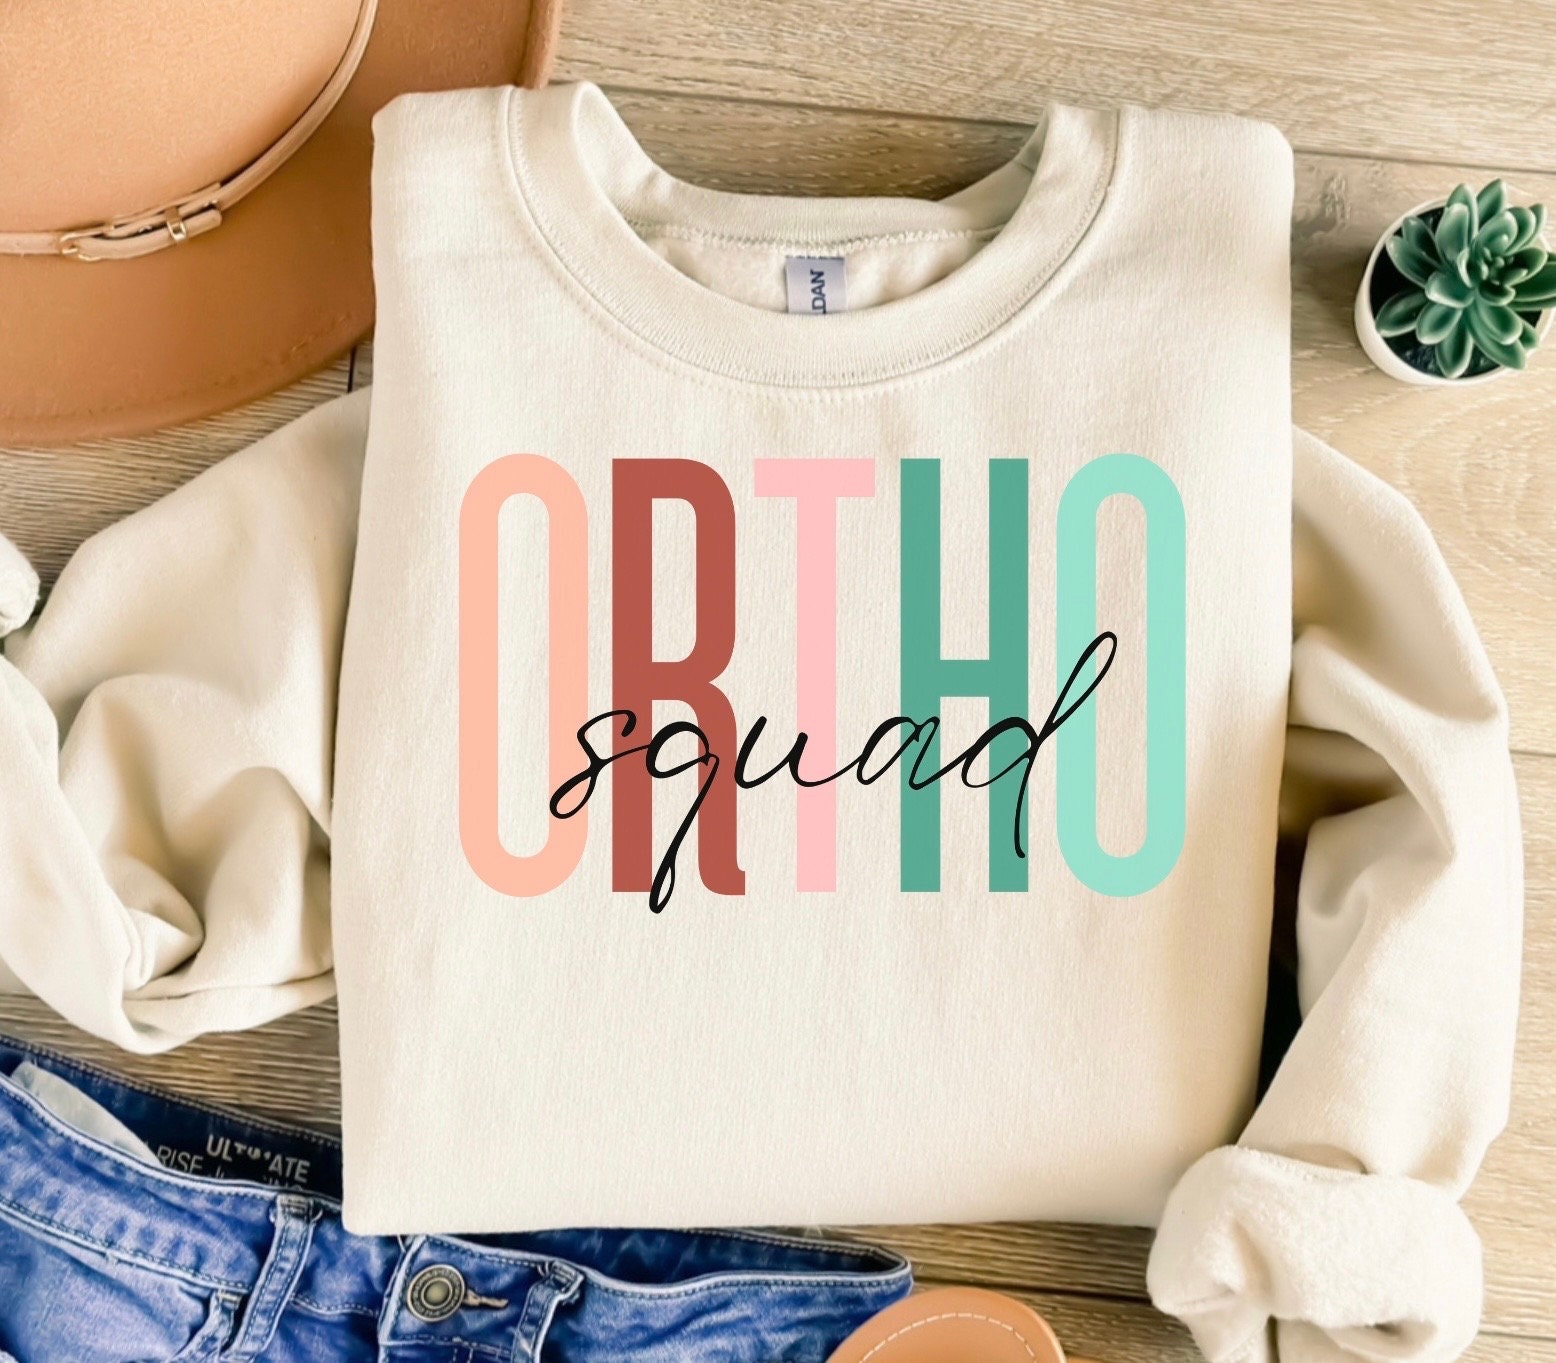 Ortho Squad Sweatshirt, Dental Sweater, Ortho Shirt, Ortho Sweater ...